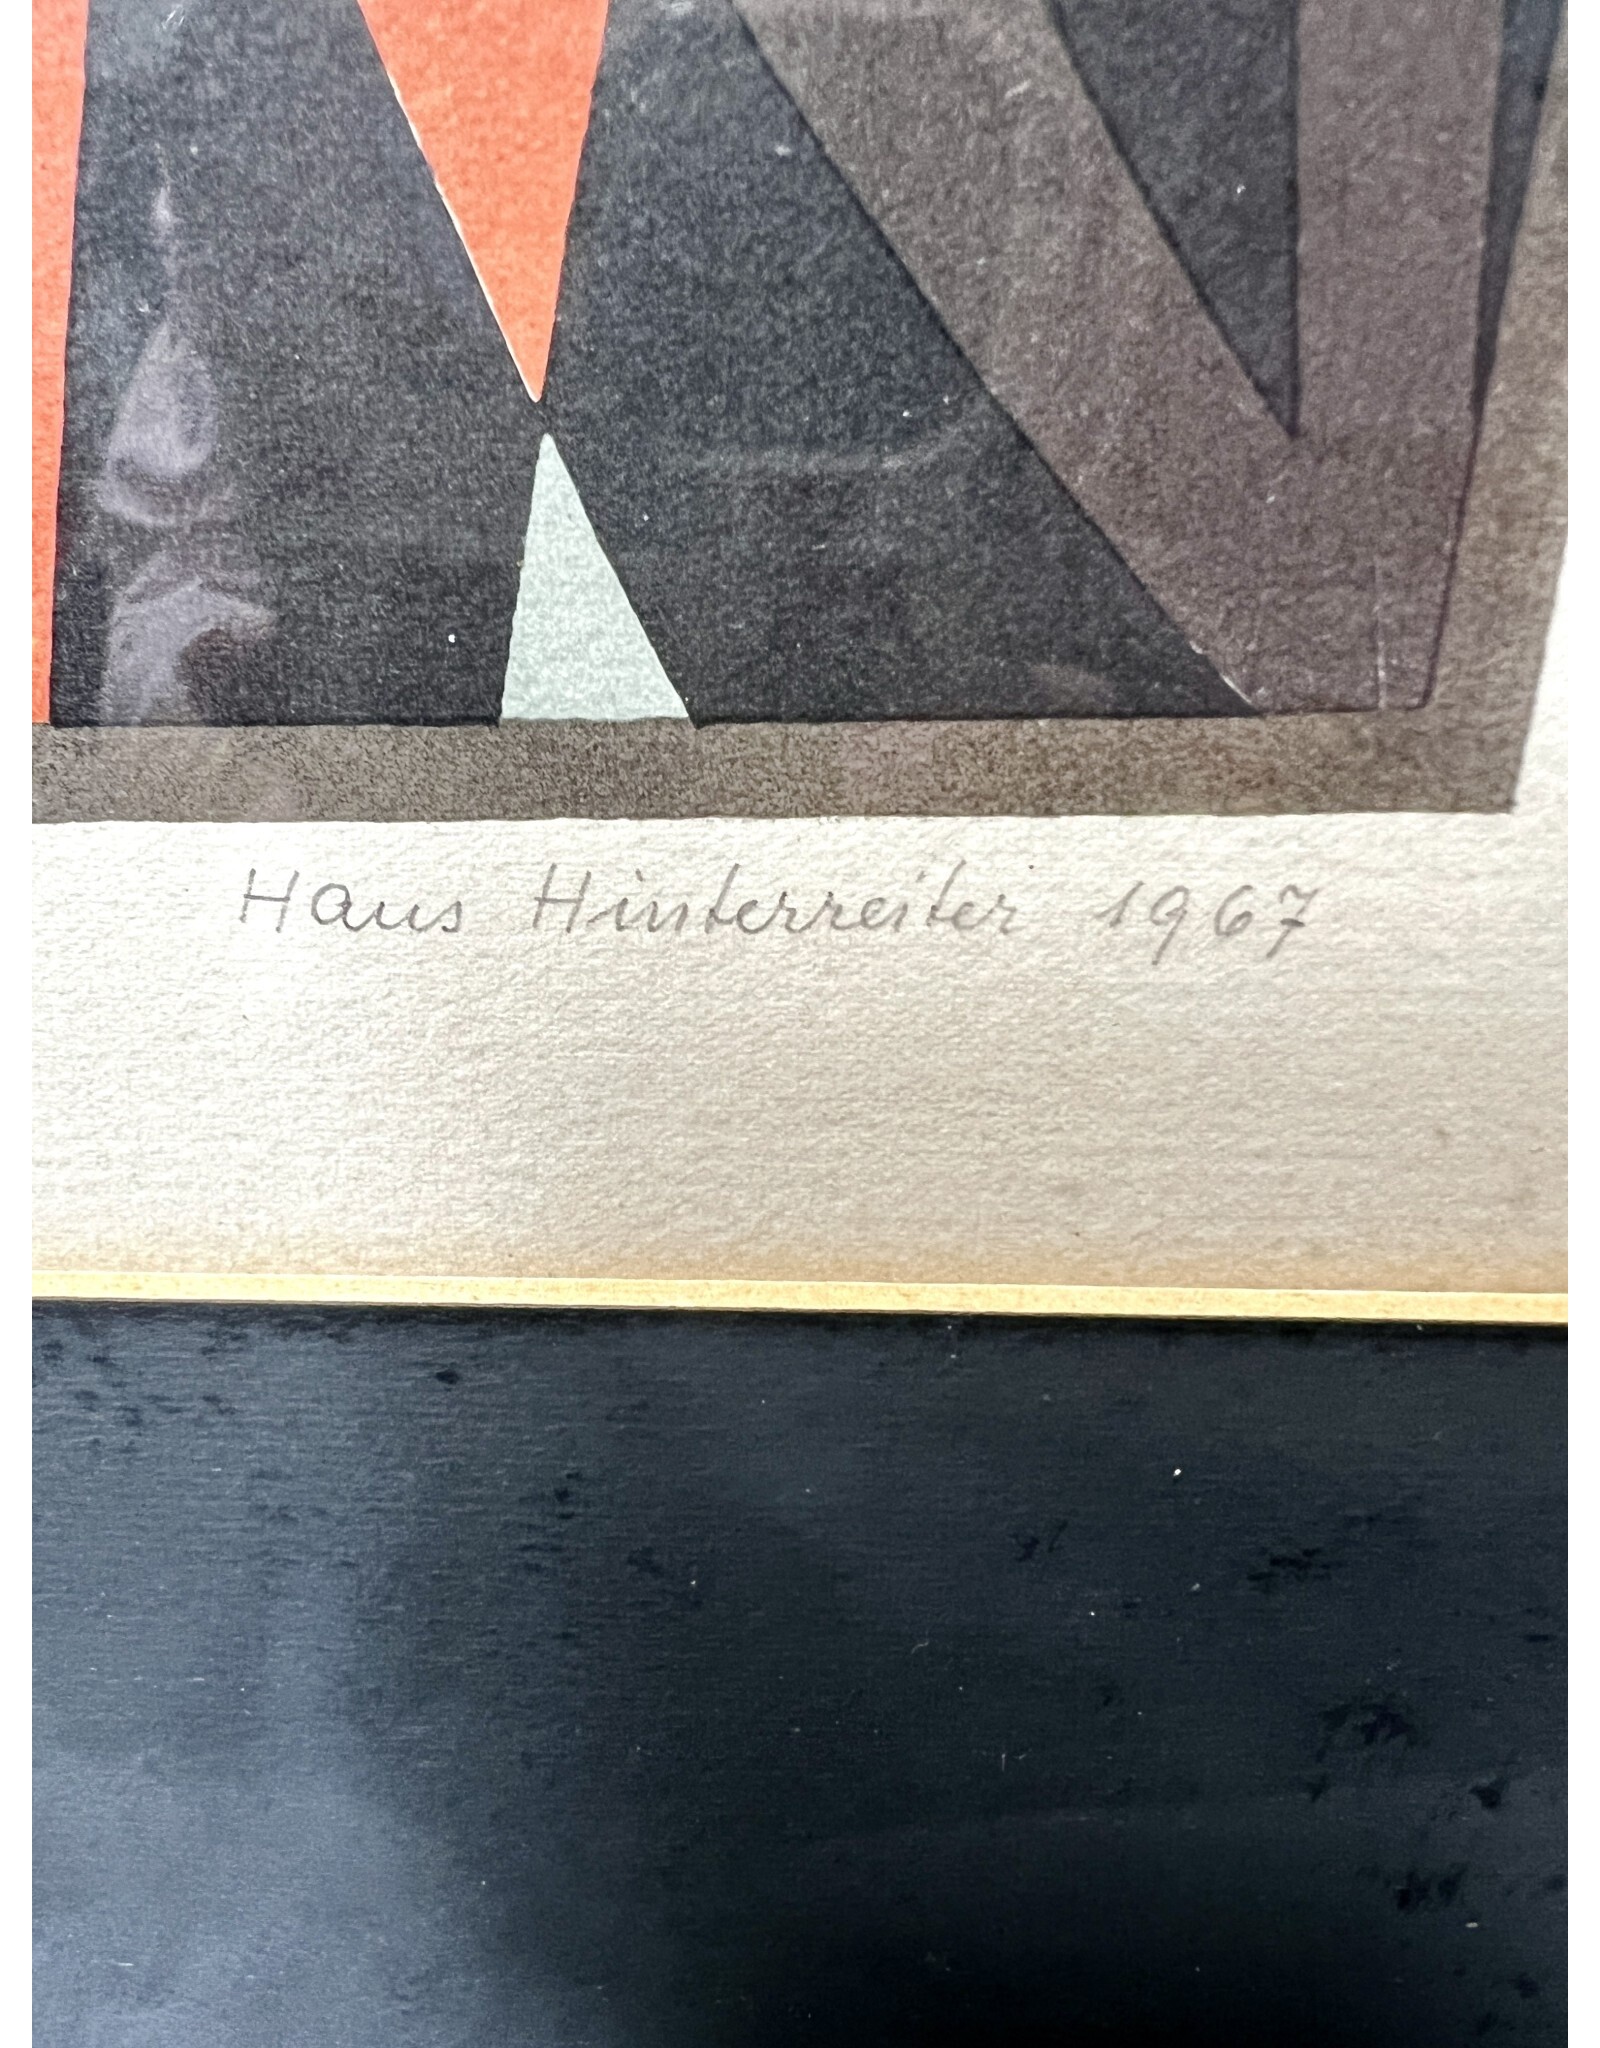 Pair of Framed Etchings by Hans Hinterriter